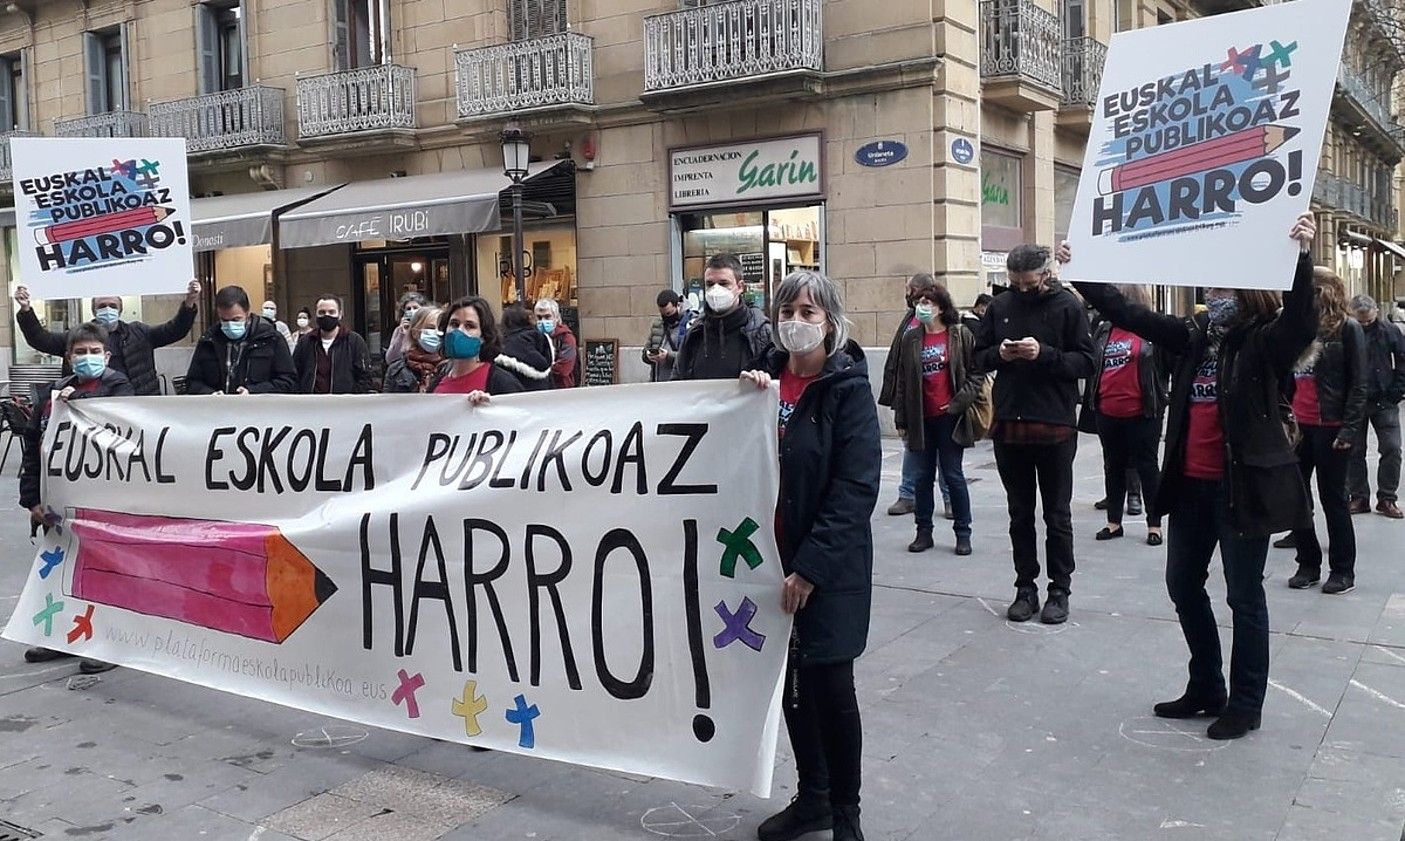 Euskal Eskola Publikoaz Harro topagunearen agerraldia, atzo. BERRIA.